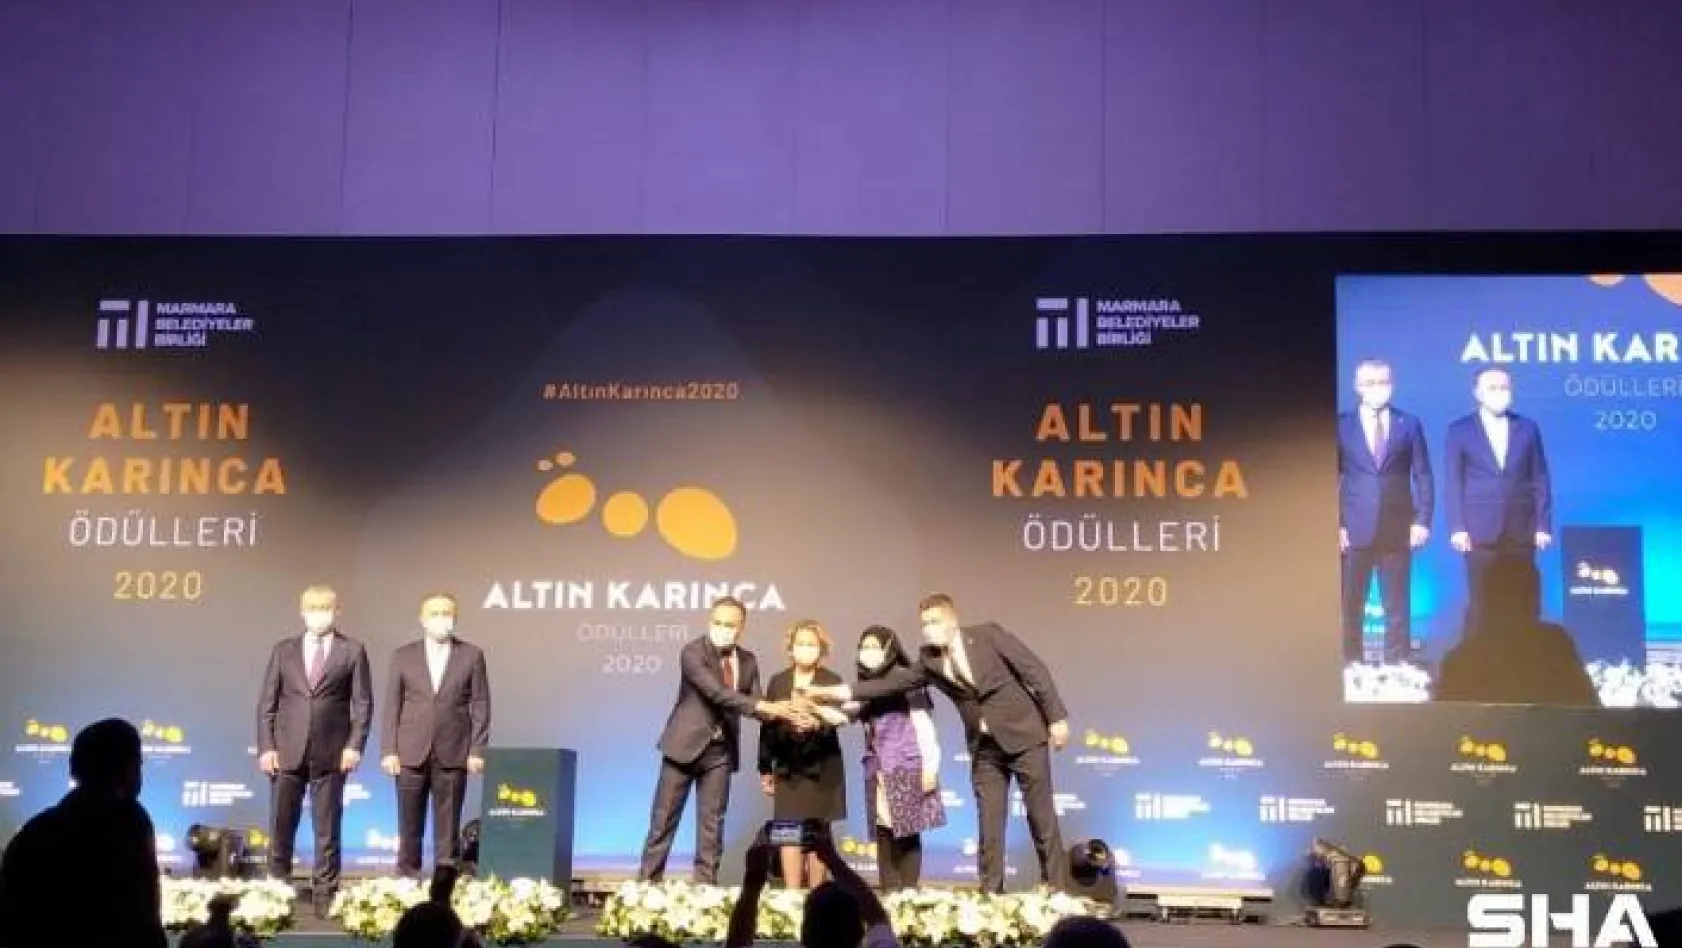 Bolu Belediyesi'ne Altın Karınca Ödülü